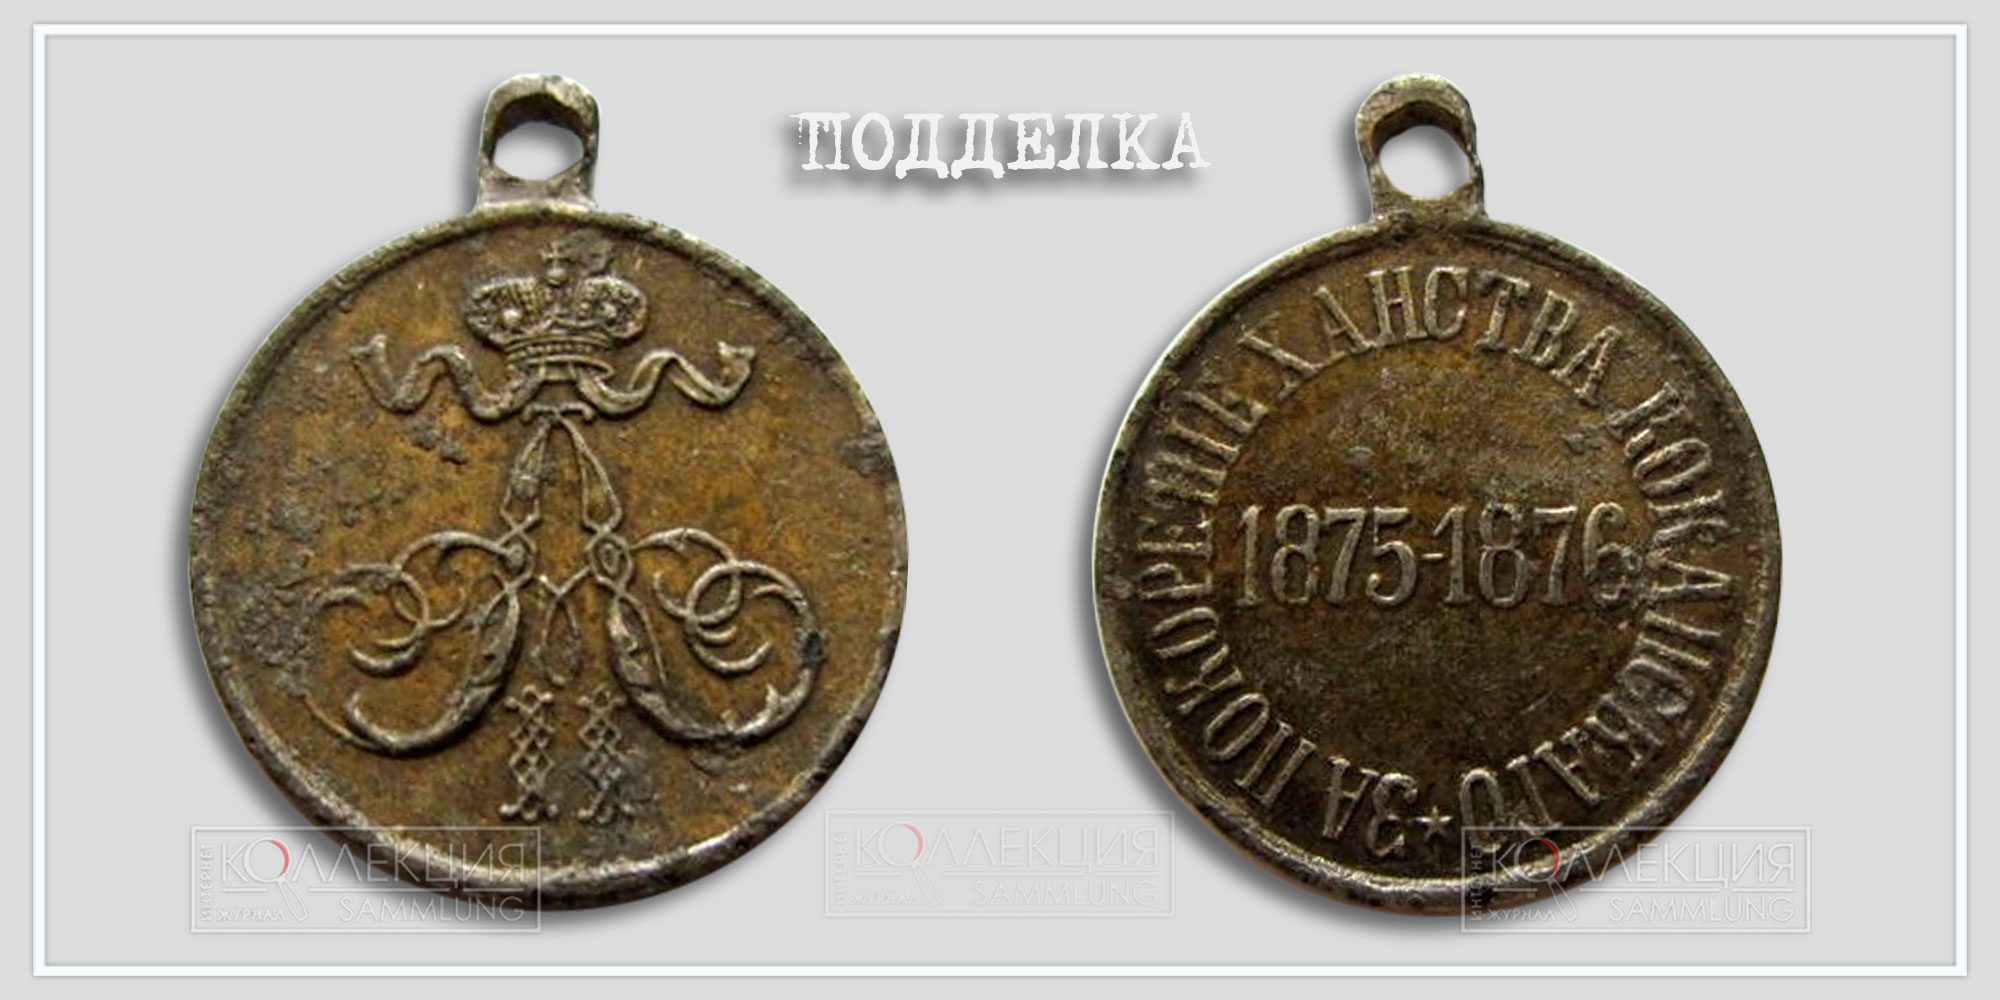 Медаль "За покорение ханства Кокандского" 1875-1876 (копия)